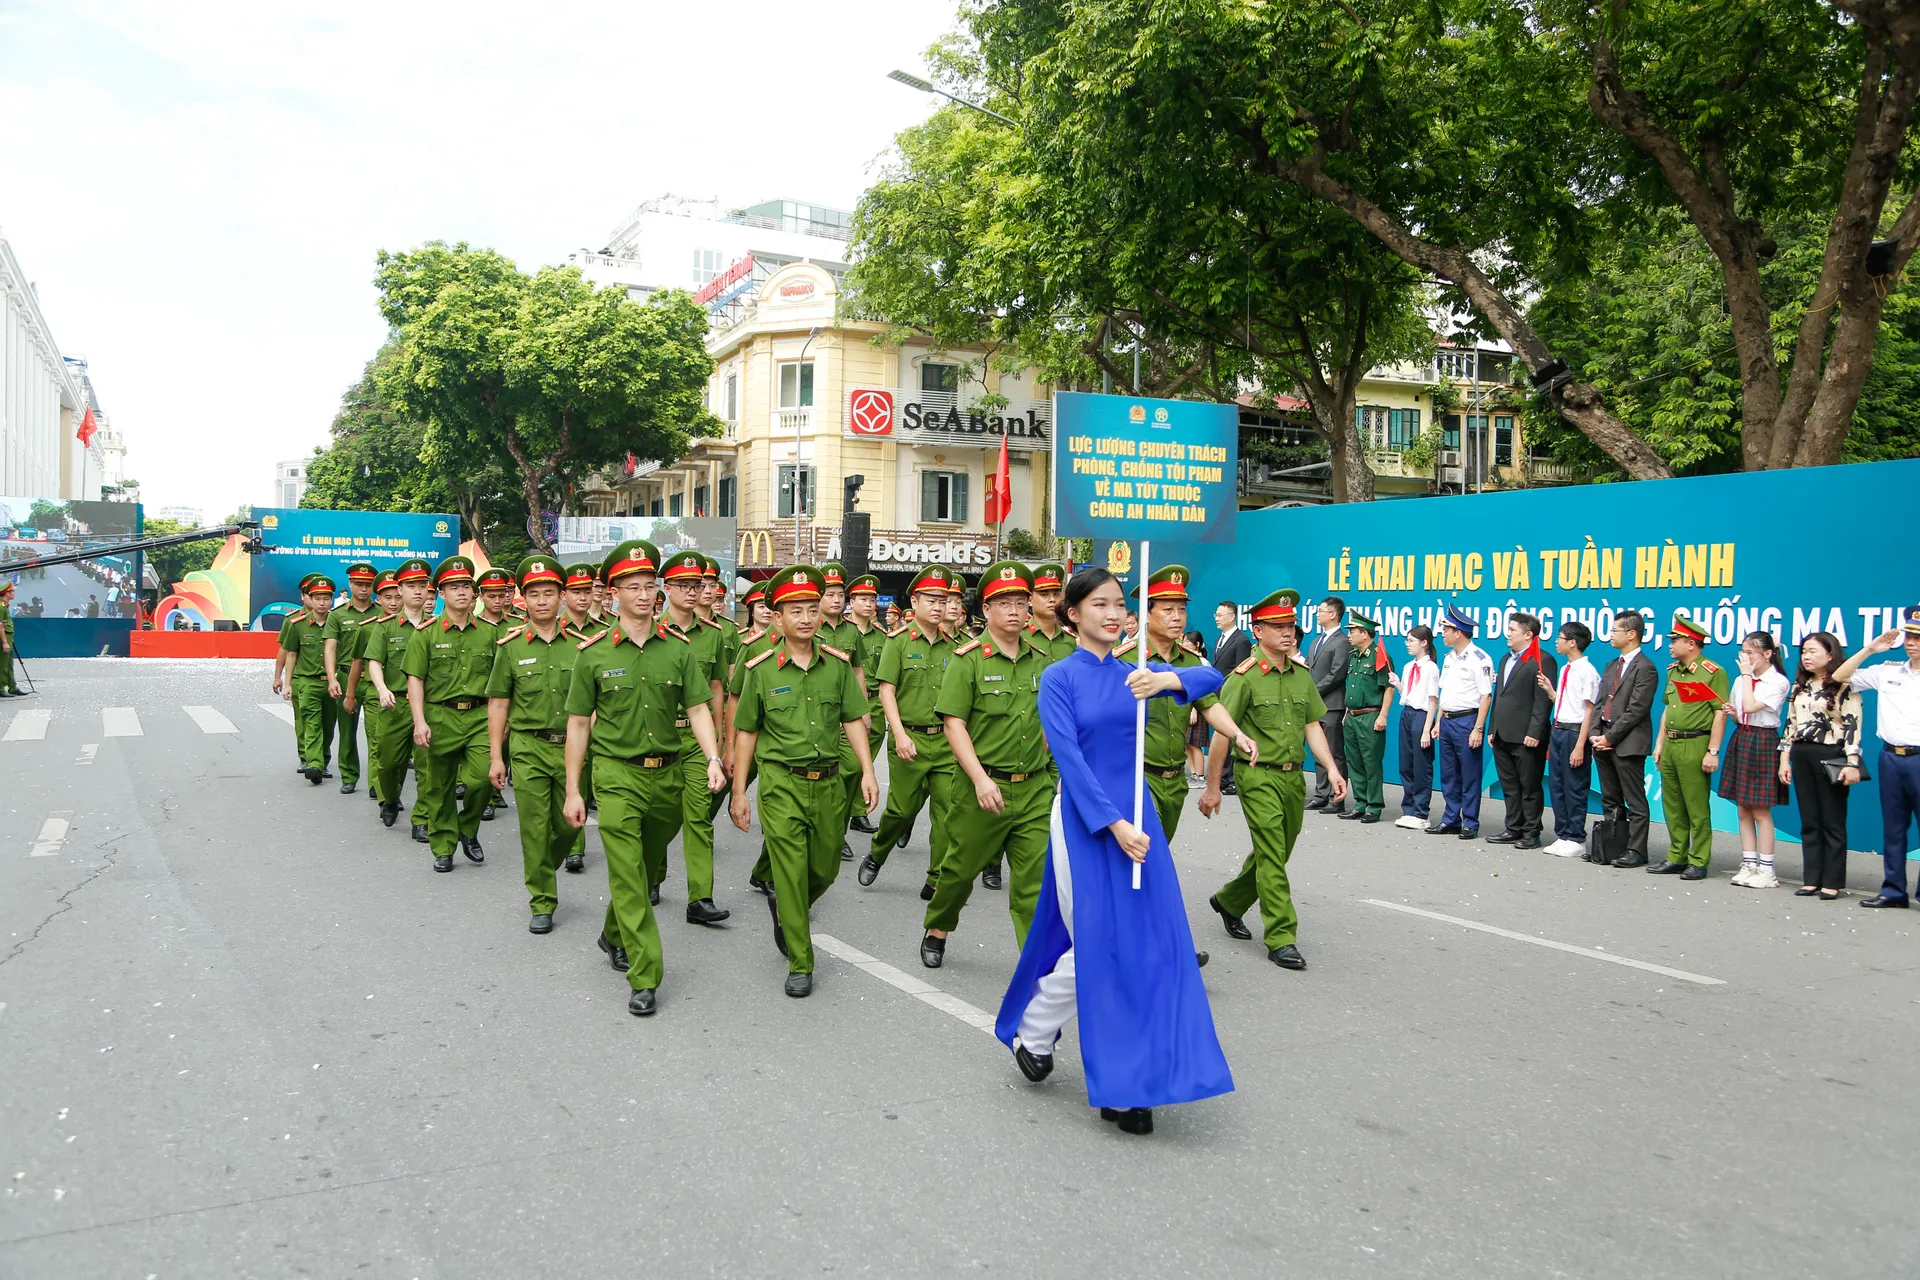 Gần 2000 người tham gia lễ tuần hành hưởng ứng Tháng hành động phòng, chống ma túy - Ảnh 3.